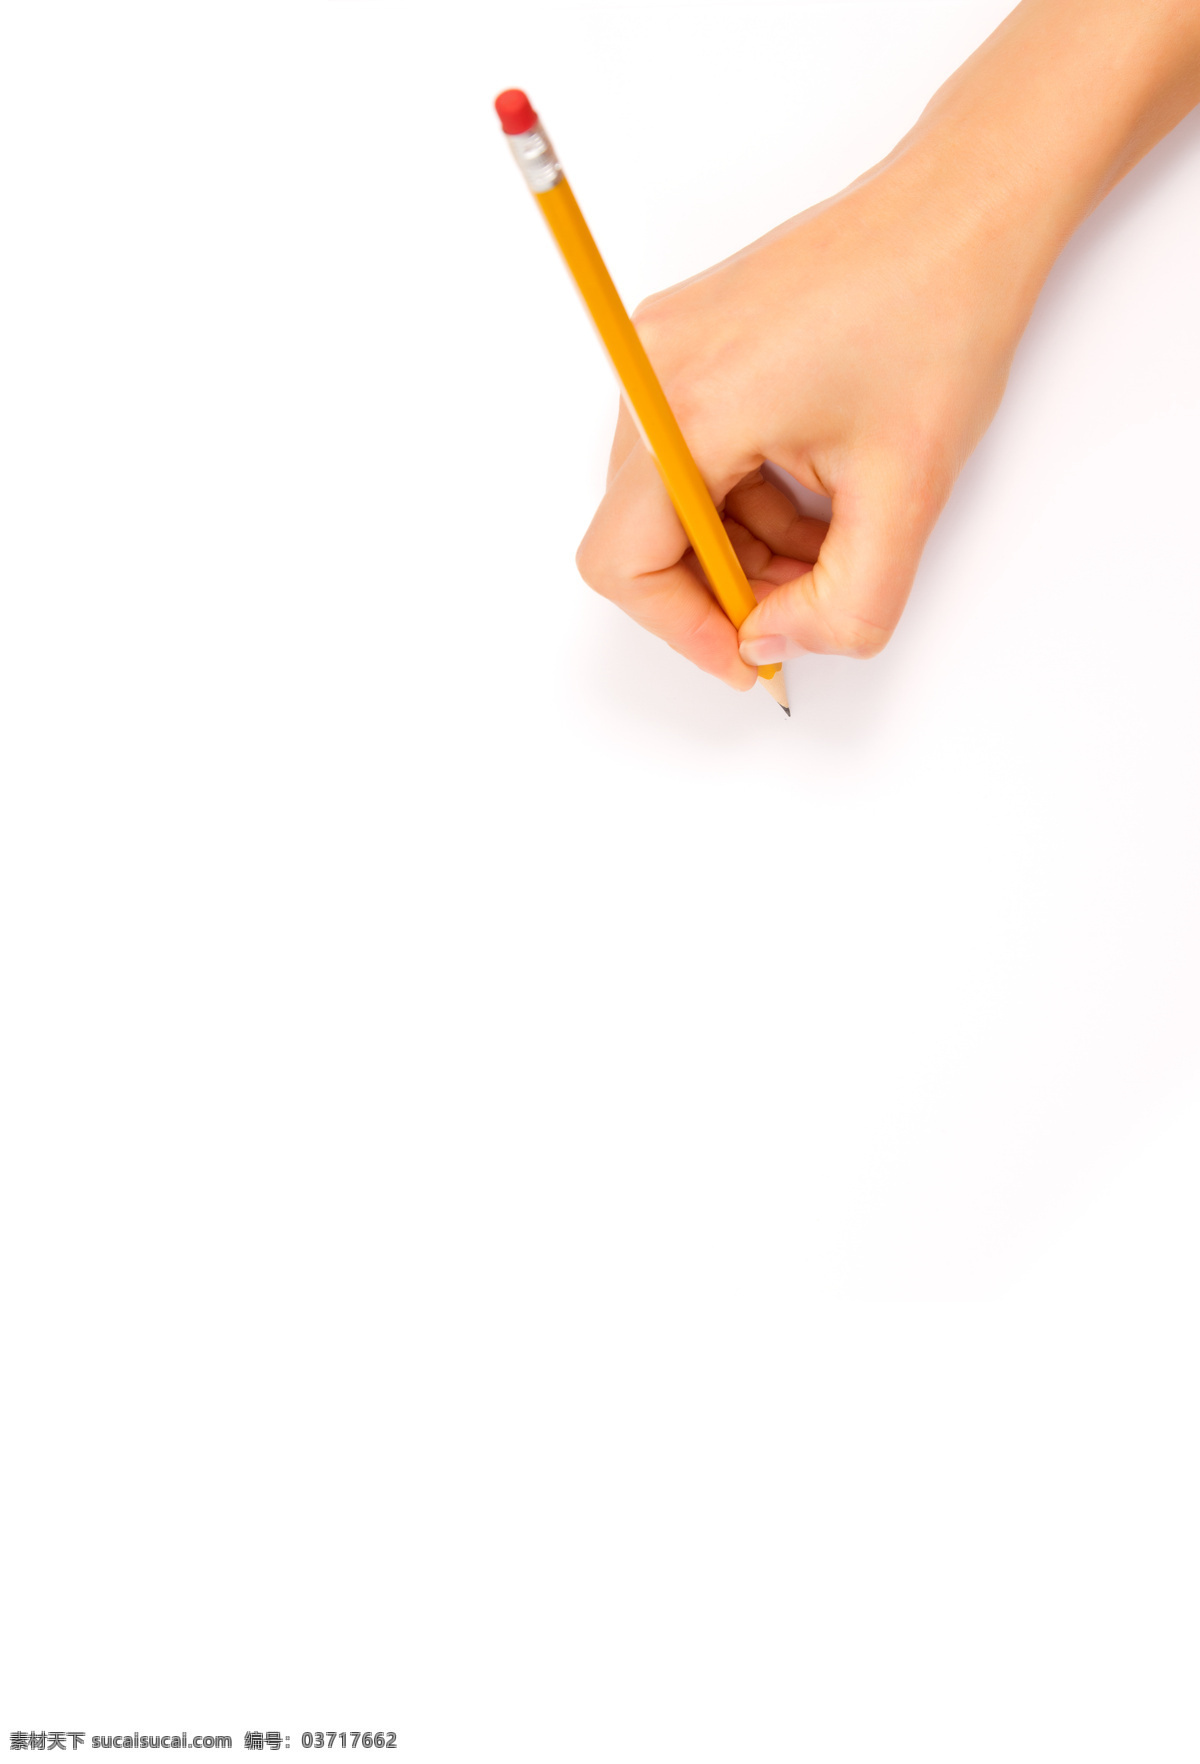 铅笔 写字 手 手势 笔 绘画笔 彩色铅笔 文具 学习用品 办公学习 生活百科